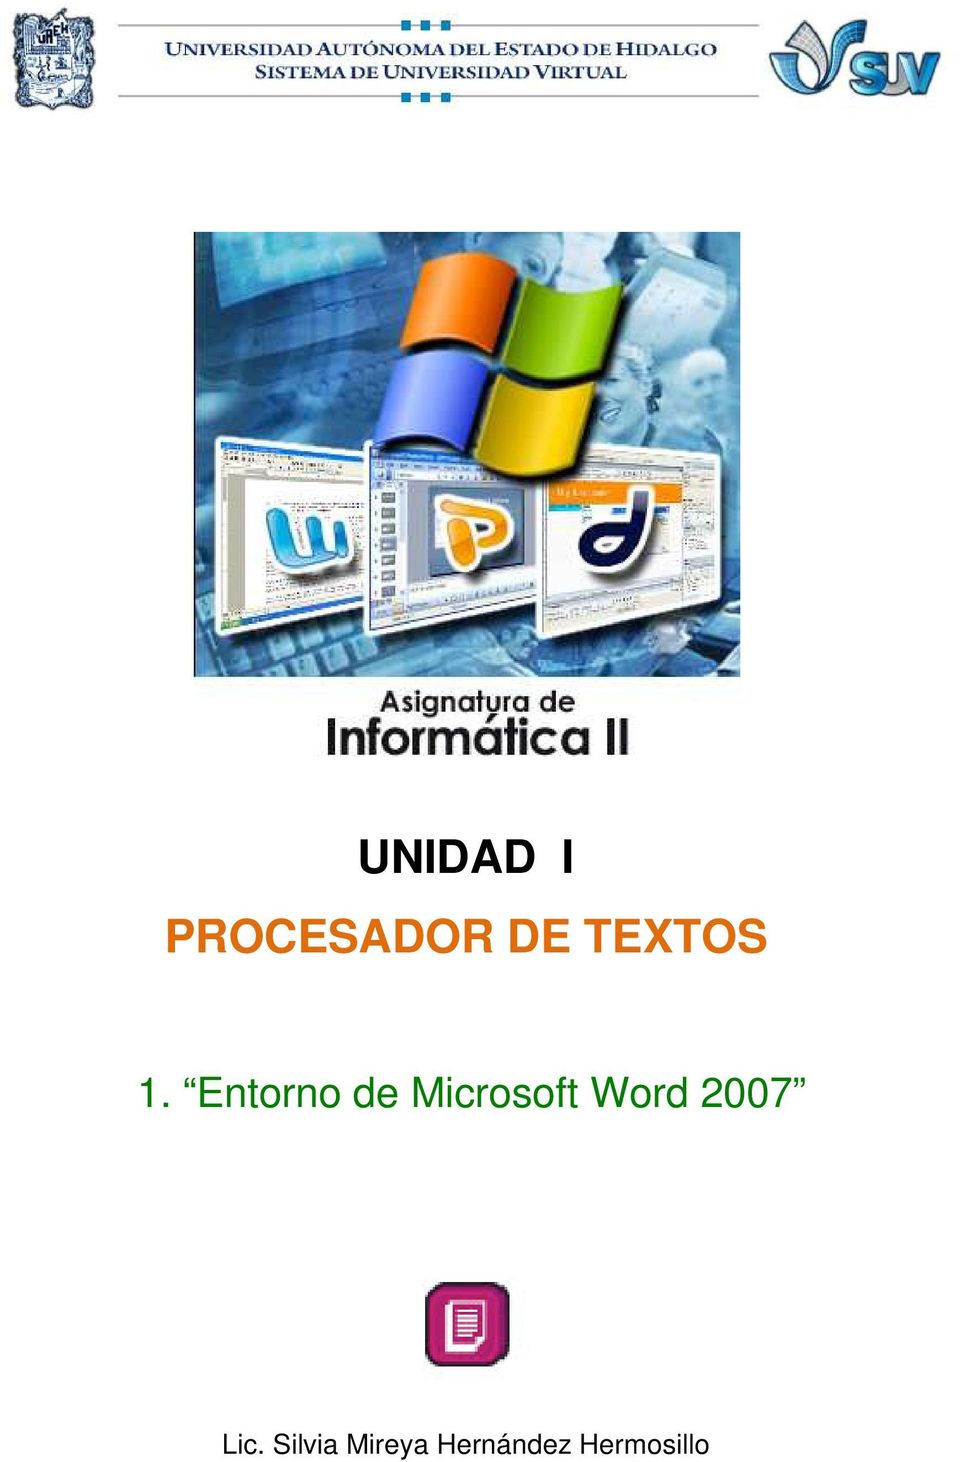 Entorno de Microsoft Word